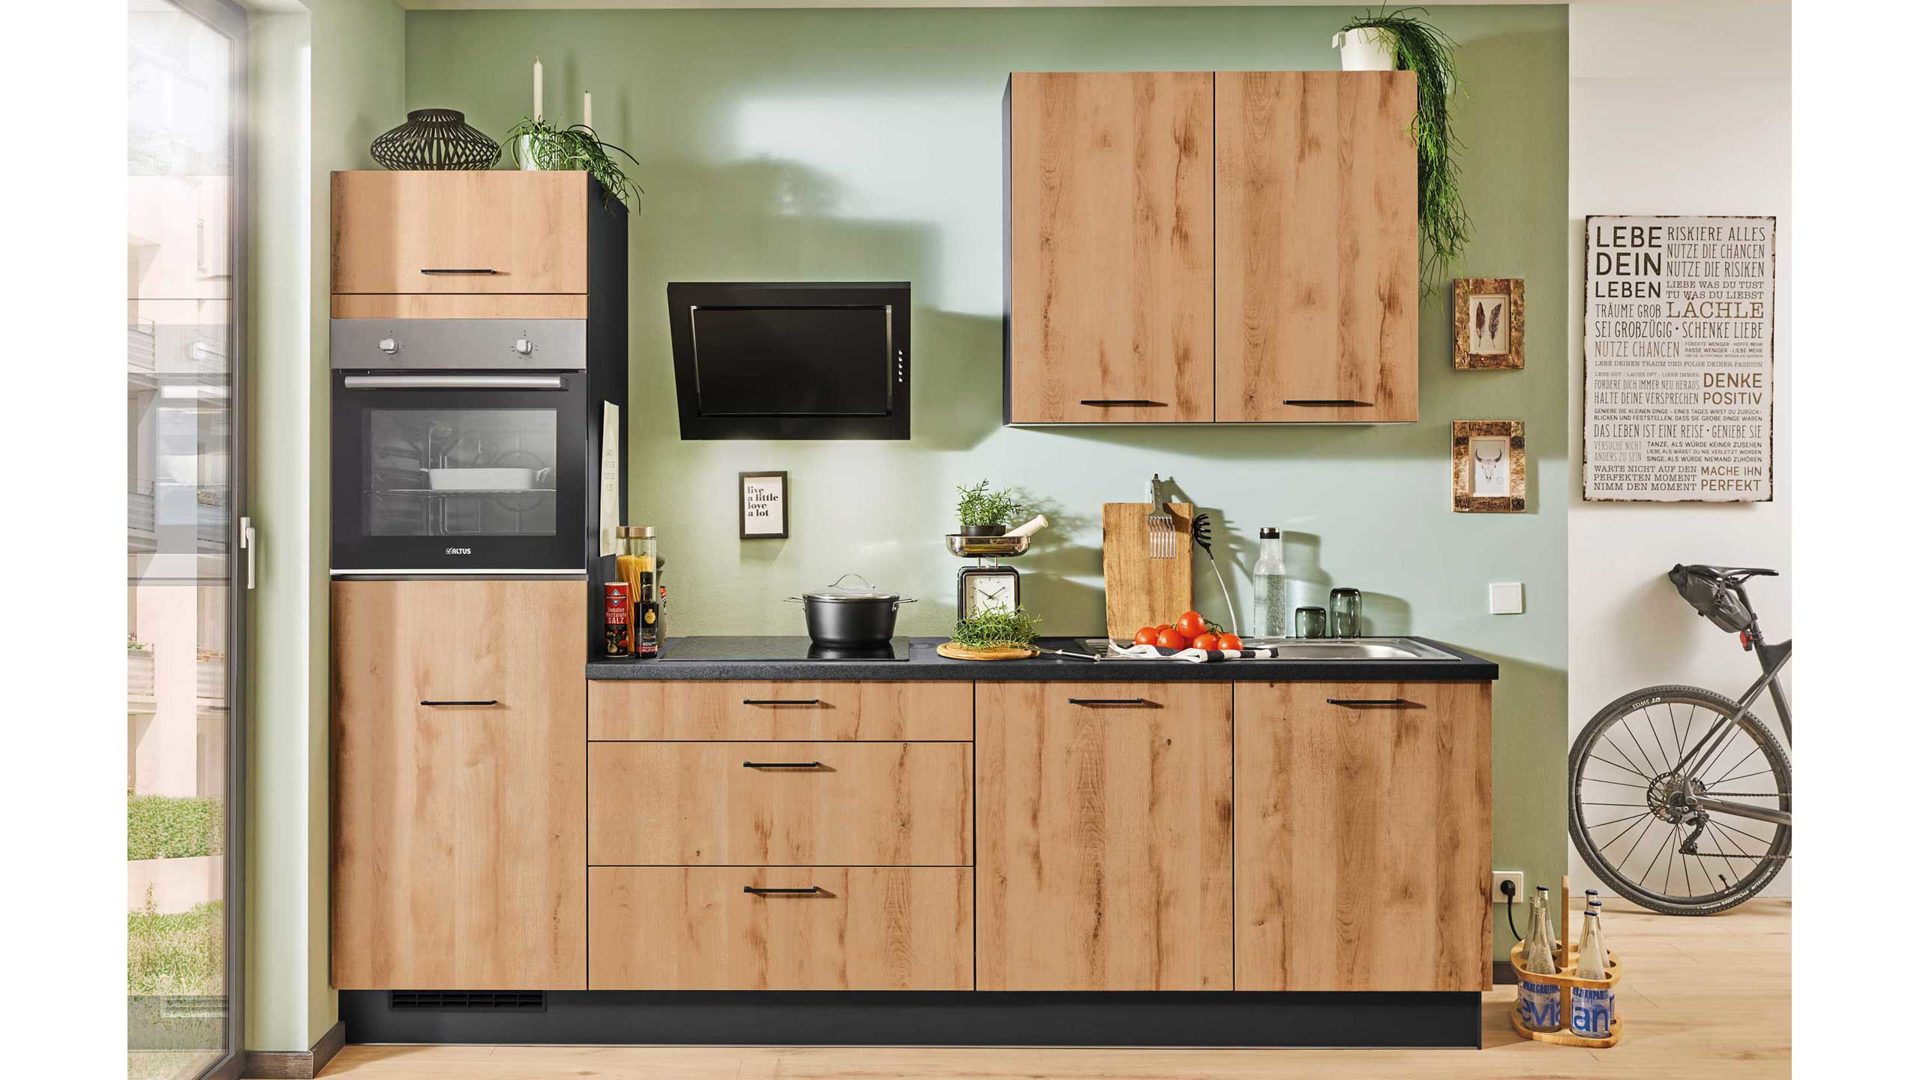 Einbauküche Pino küchen aus Holz Kunststoff Metall in Holzfarben Graphit moderne pino Einbauküche inklusive ALTUS Einbaugeräte Honig Eiche Nachbildung - Graphit - Länge ca. 270 cm